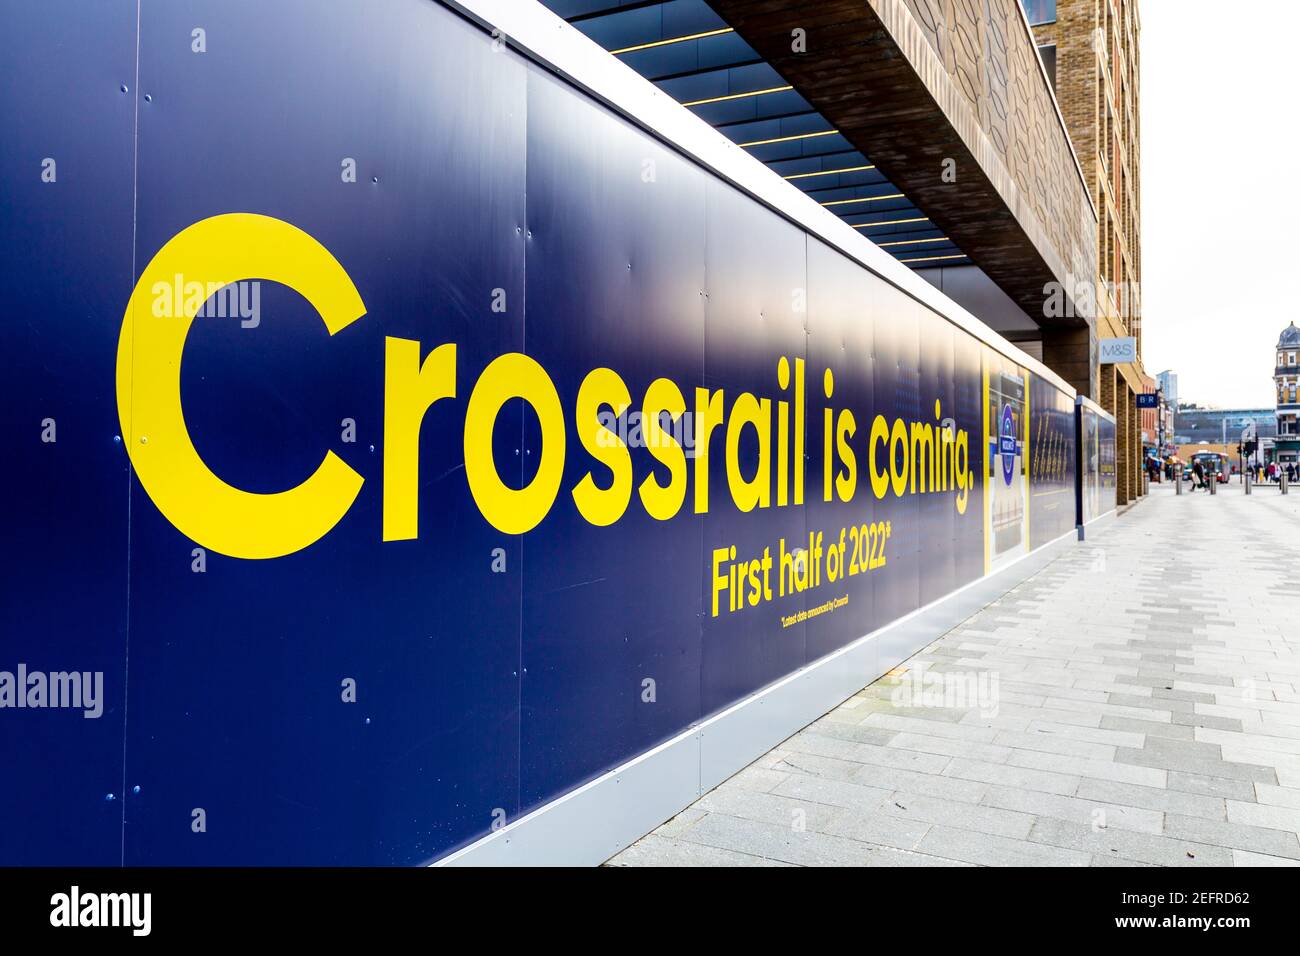 Crossrail kommt, erste Hälfte von 2022 Zeichen am Eingang der neuen Elizabth Linie, Woolwich, London, Großbritannien Stockfoto